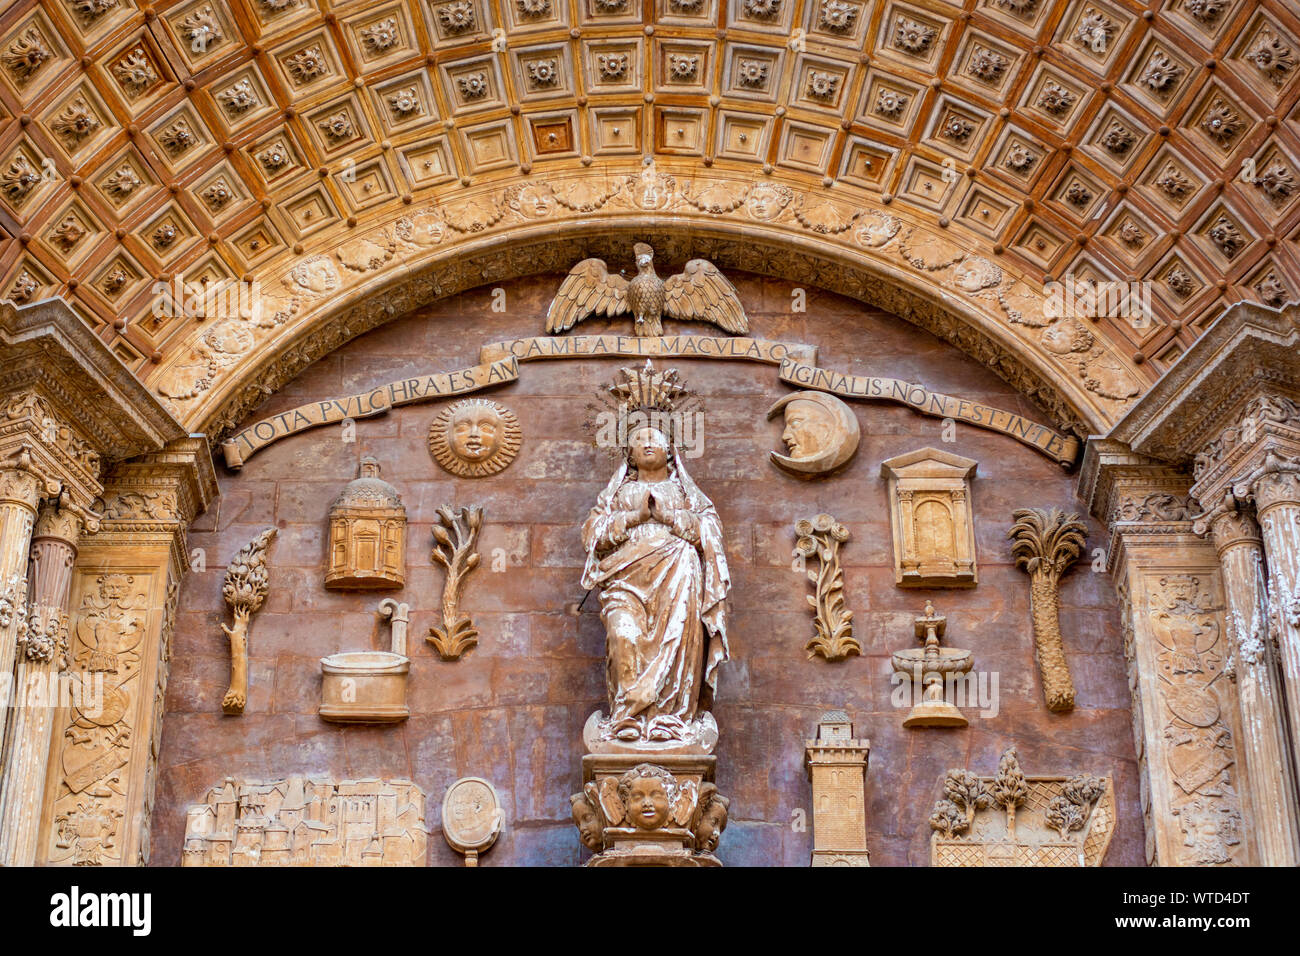 Catedral-Bas ílica de Santa María de Mallorca (Kathedrale von Palma, Palma de Mallorca) Stockfoto